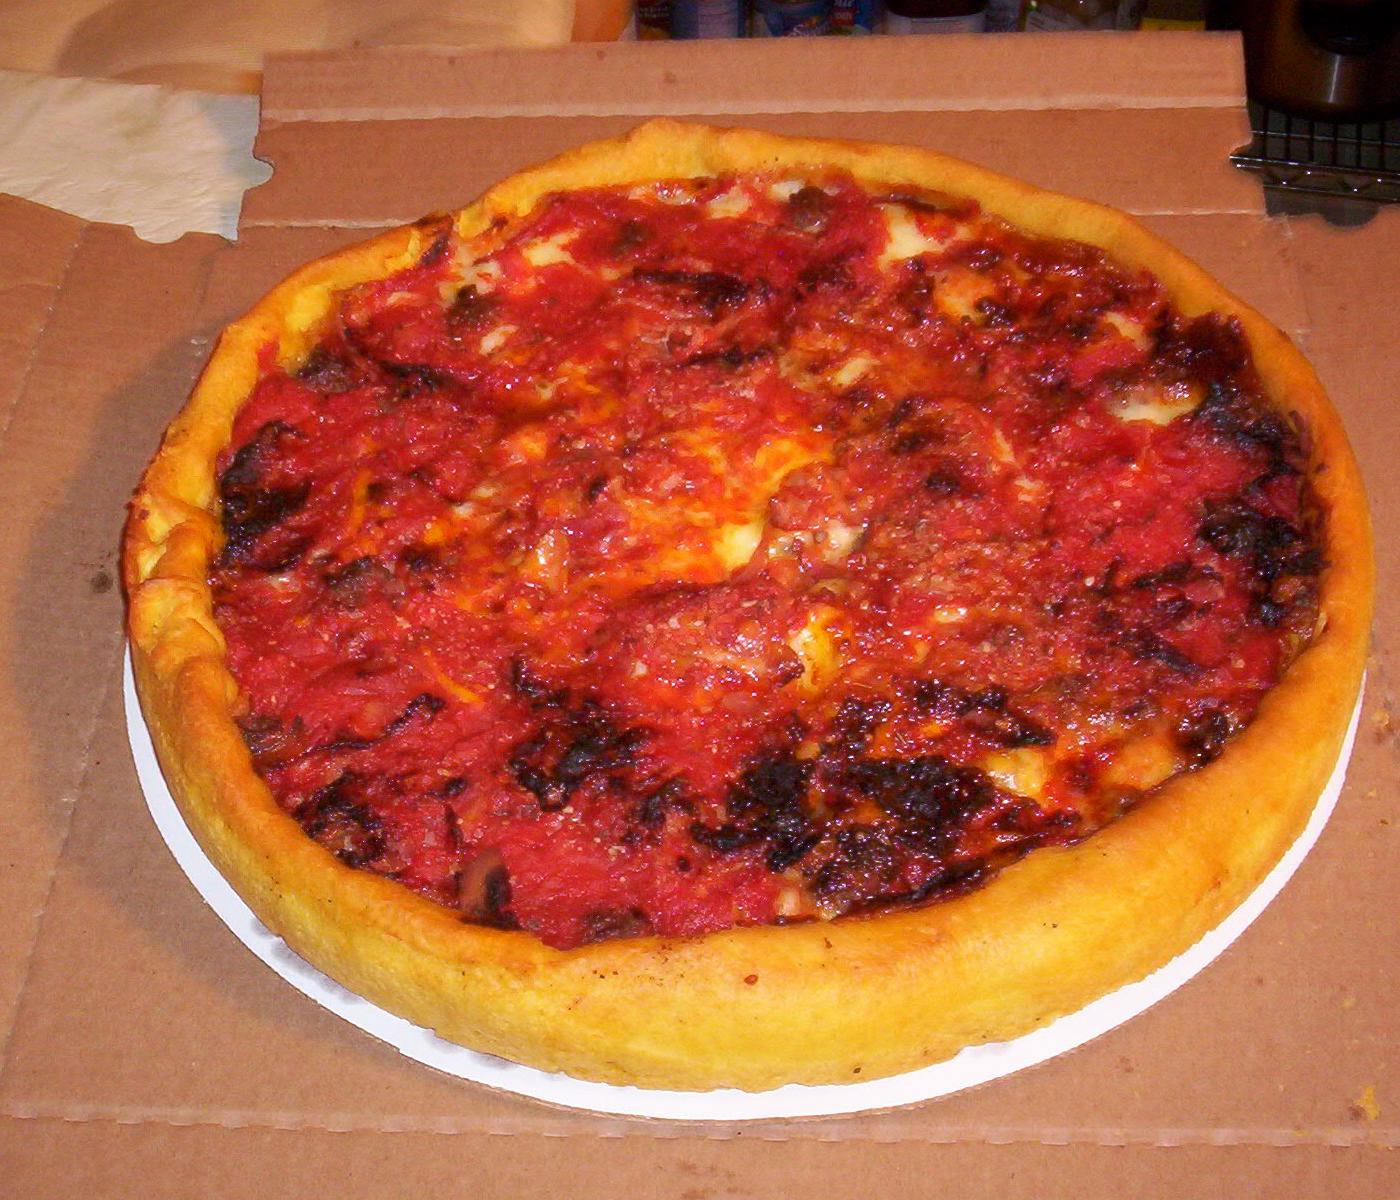 Pan pizza - Wikipedia